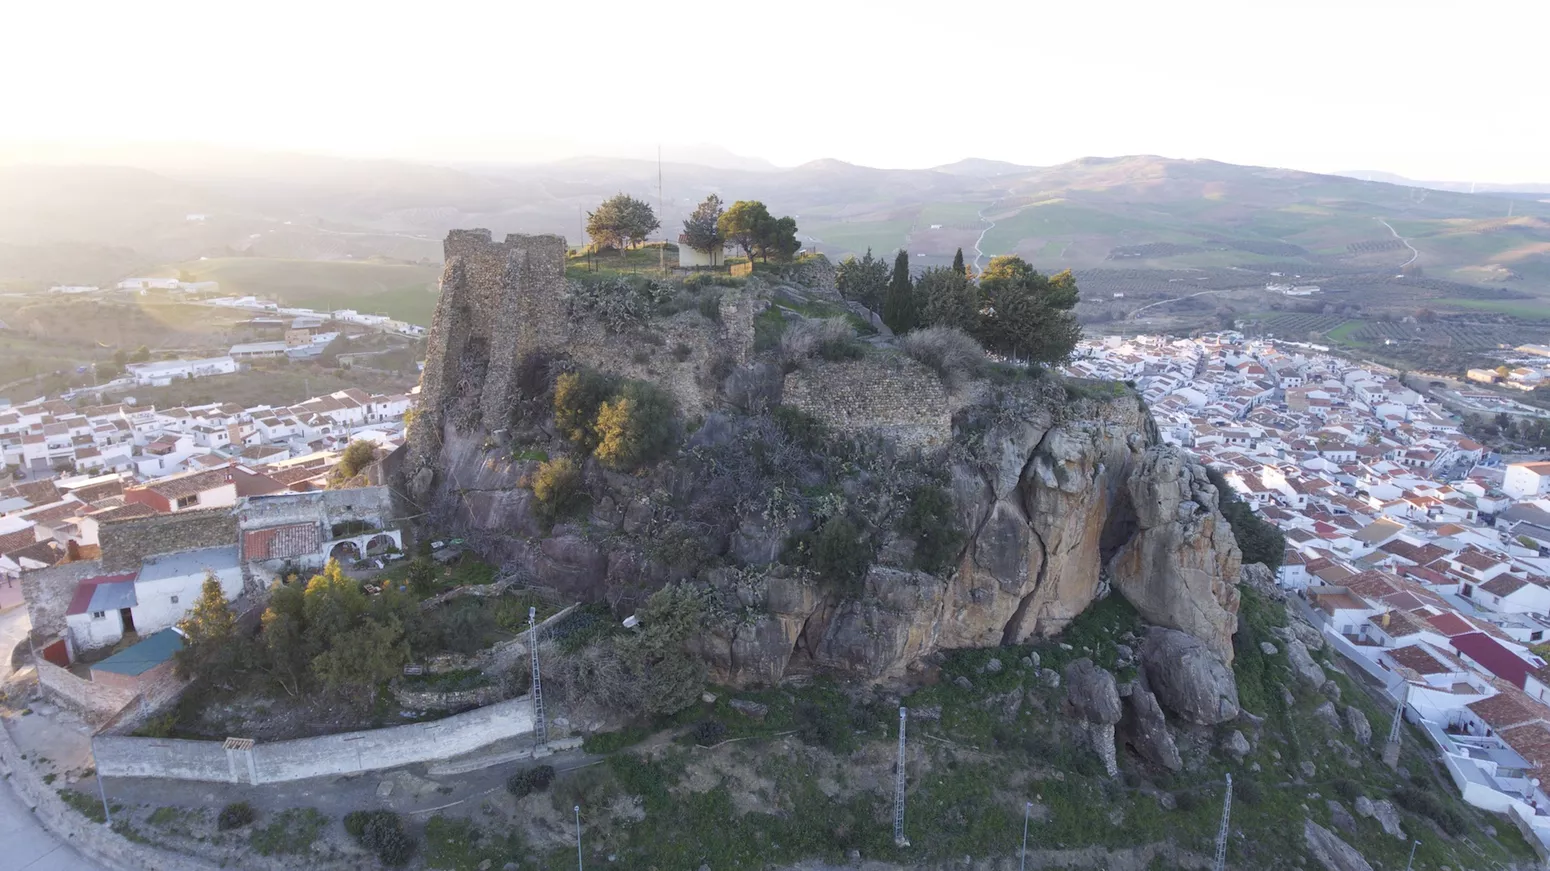 Strategic castle on a hill: Castillo de la Peña 